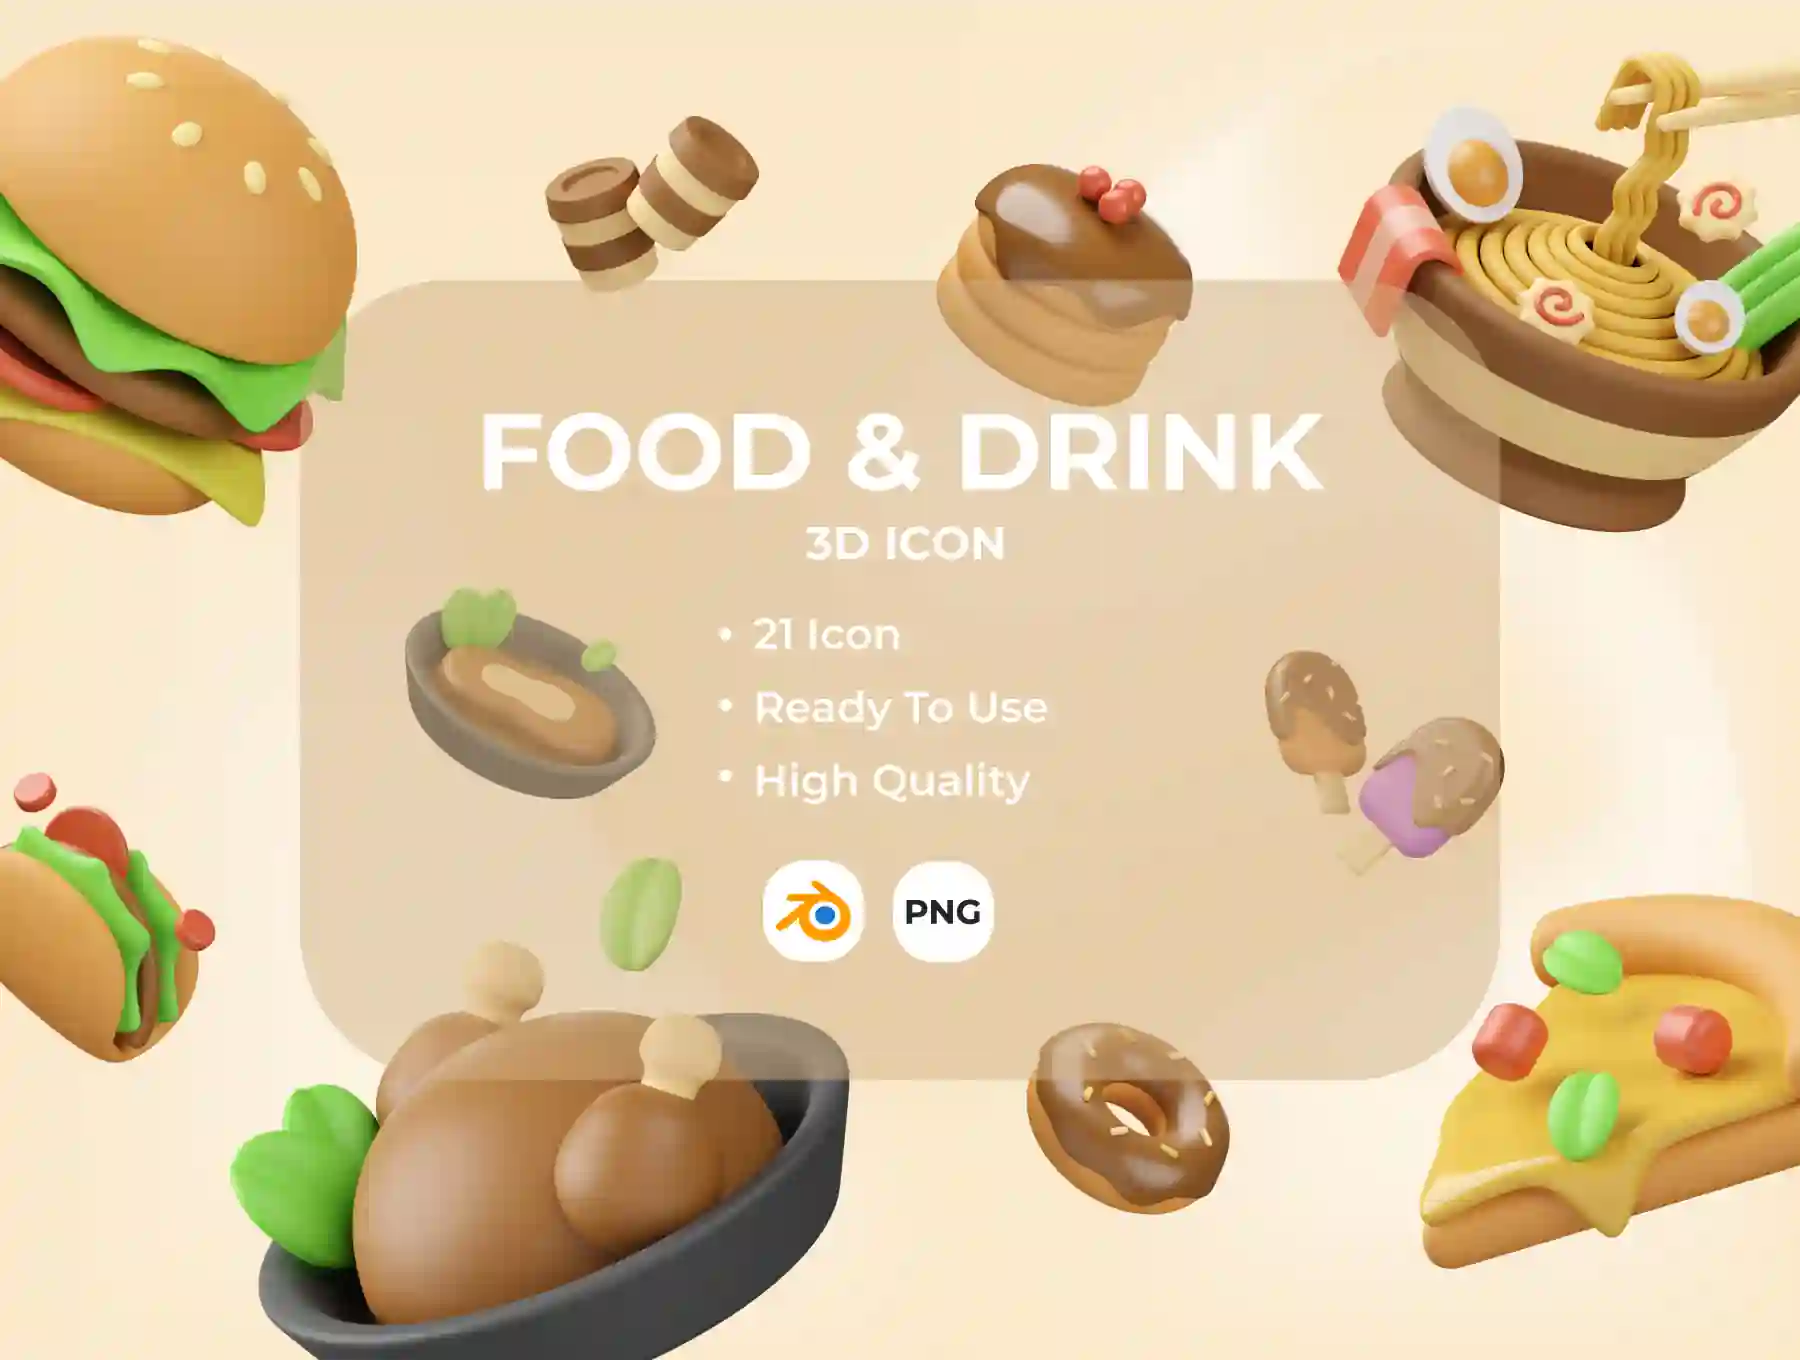 Food & Drink 3D Illustration